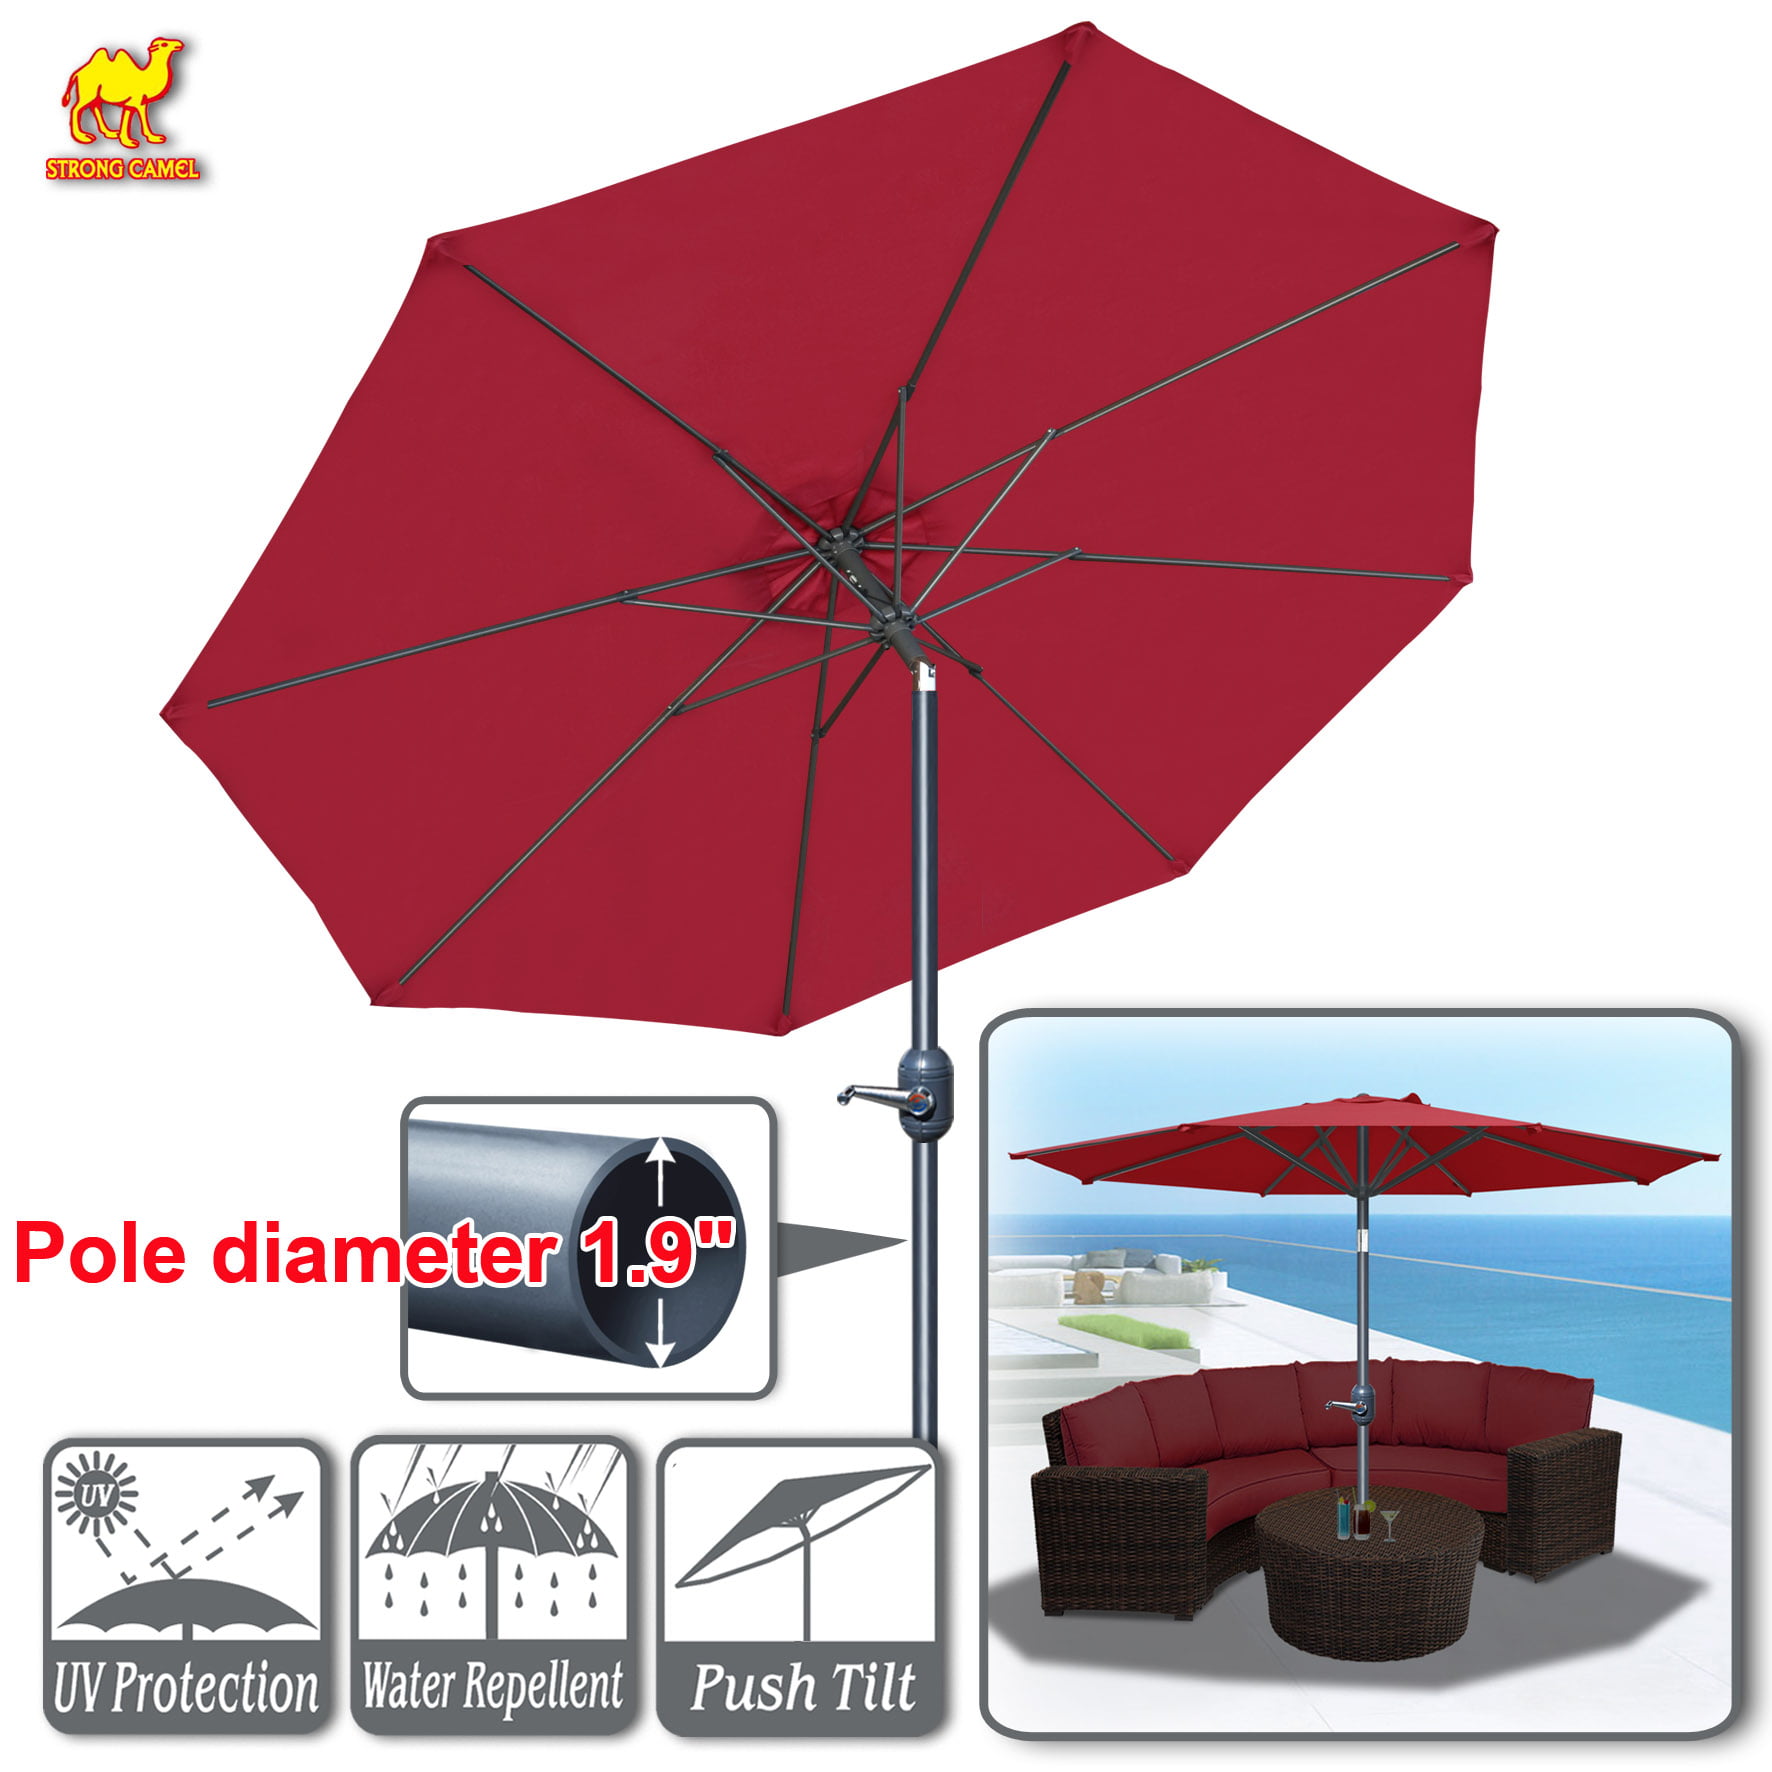 Strong Camel Patio Umbrella 10' with Tilt and Crank 8 Ribs Outdoor Garden Market Parasol